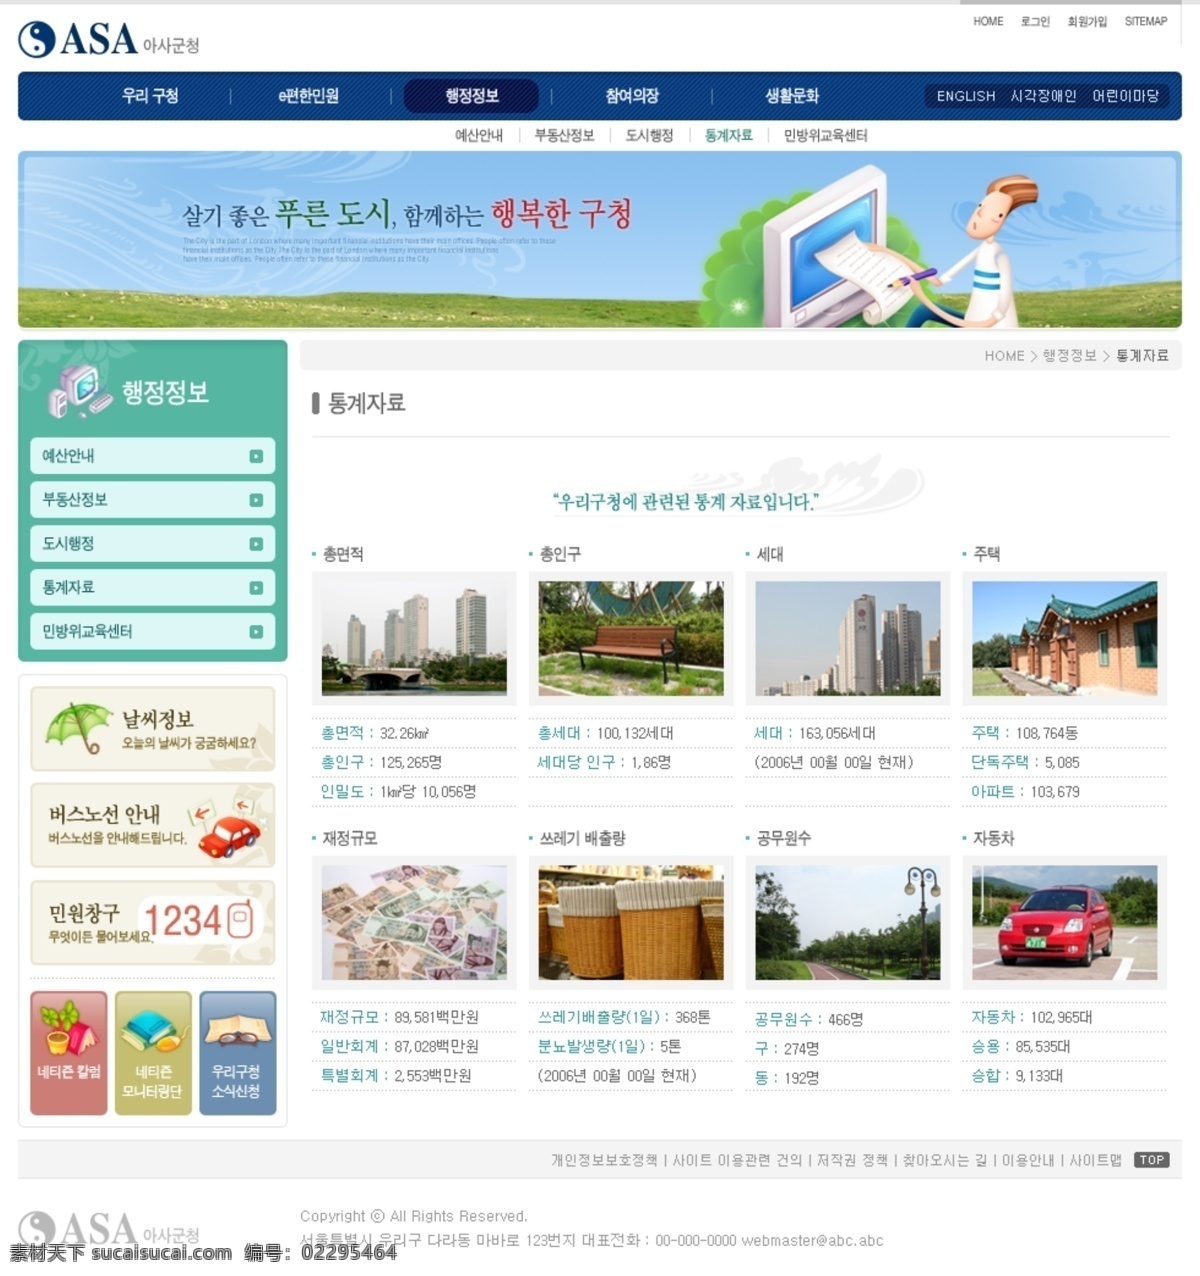 韩国 地区 门户 商业 网页模板 厍呕桃低衬 网页素材